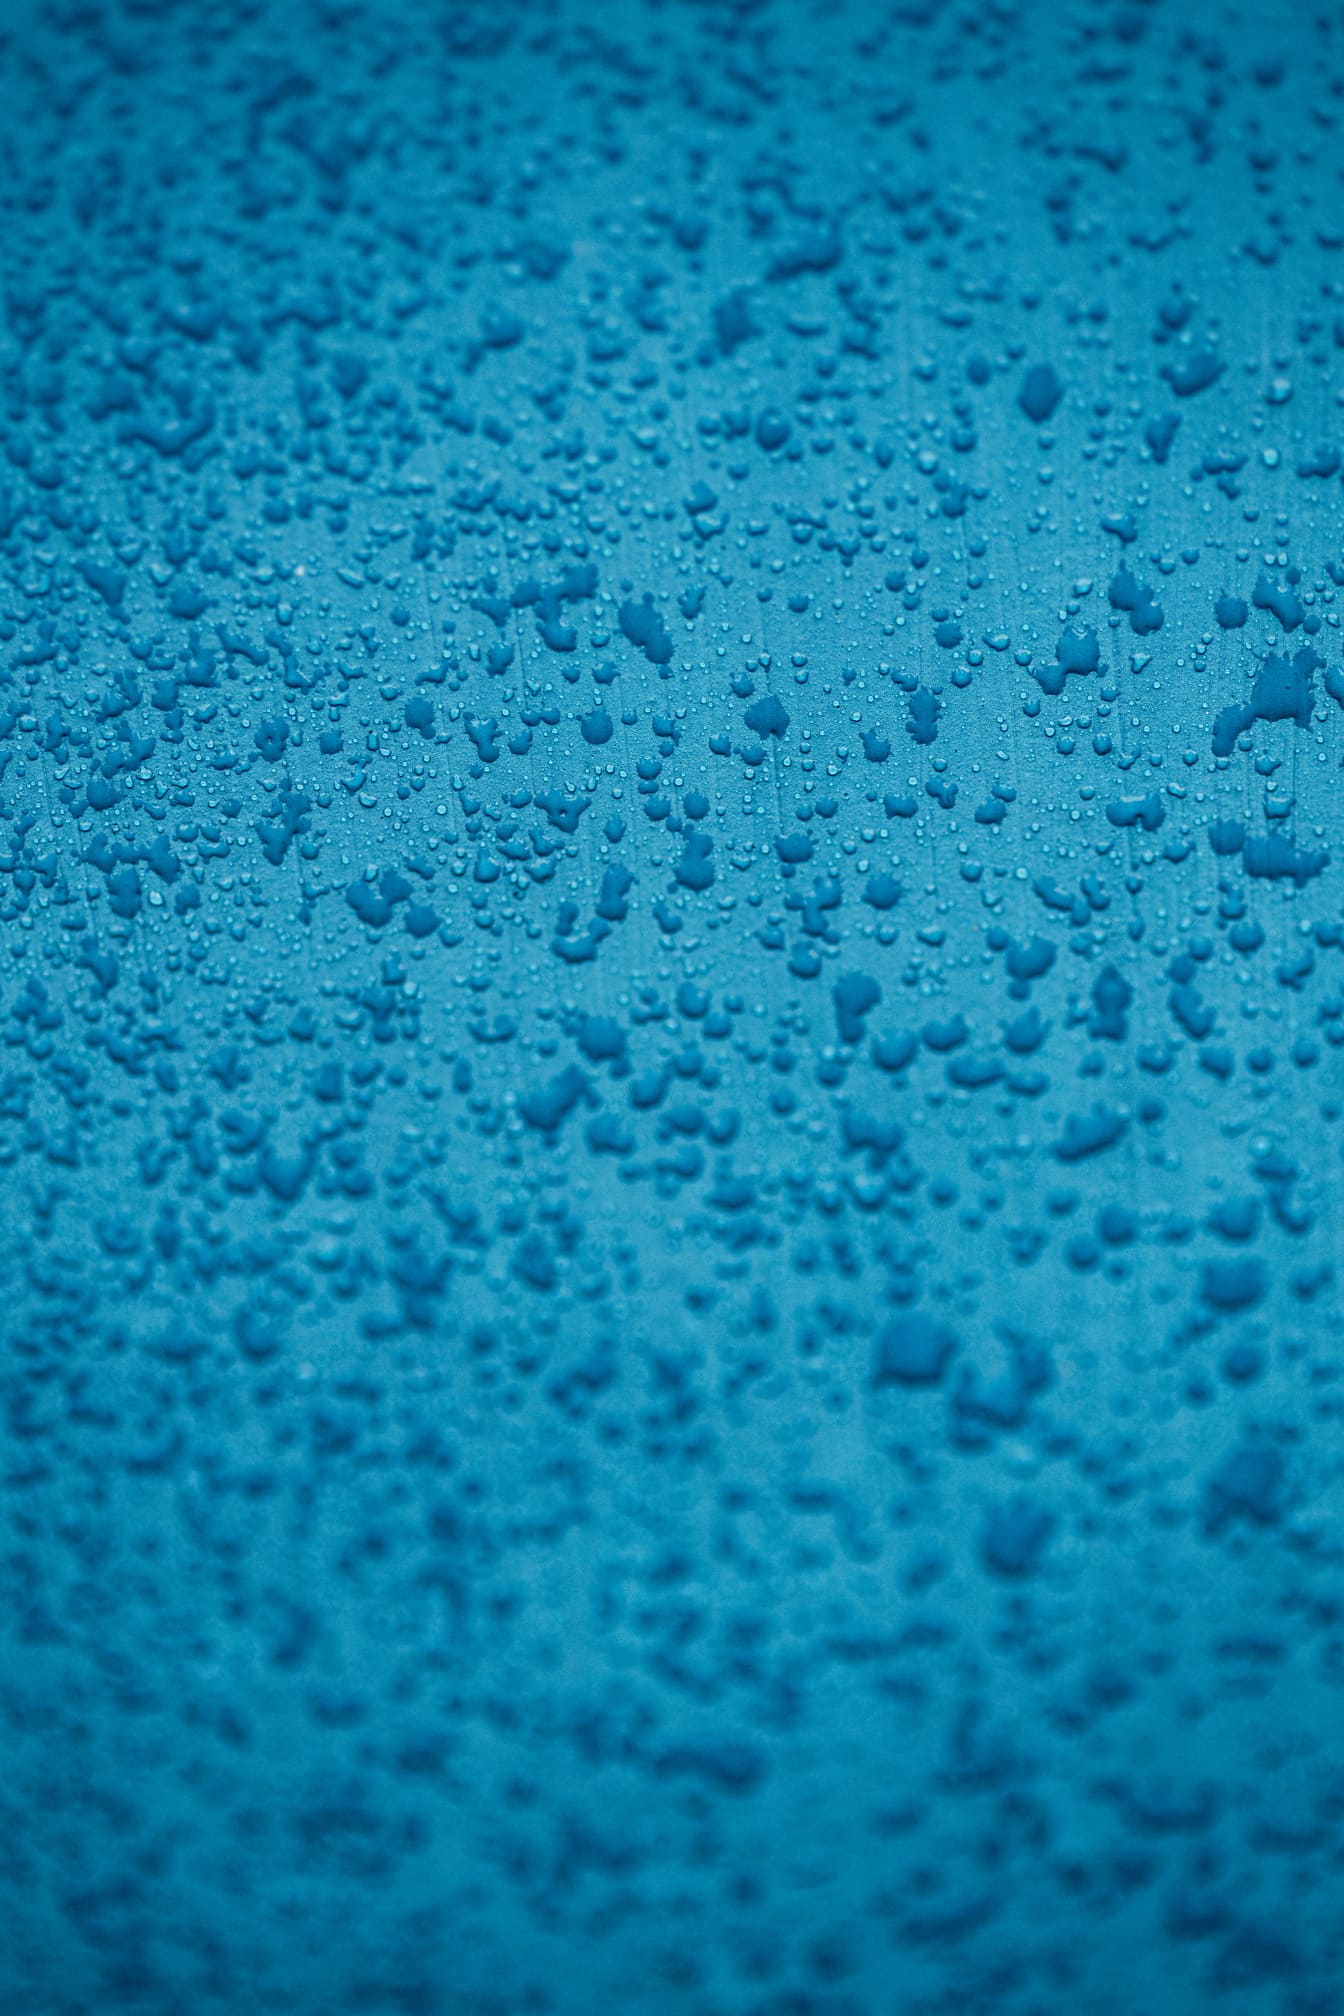 Nedvesség kondenzáció azúrkék festék közeli textúráján